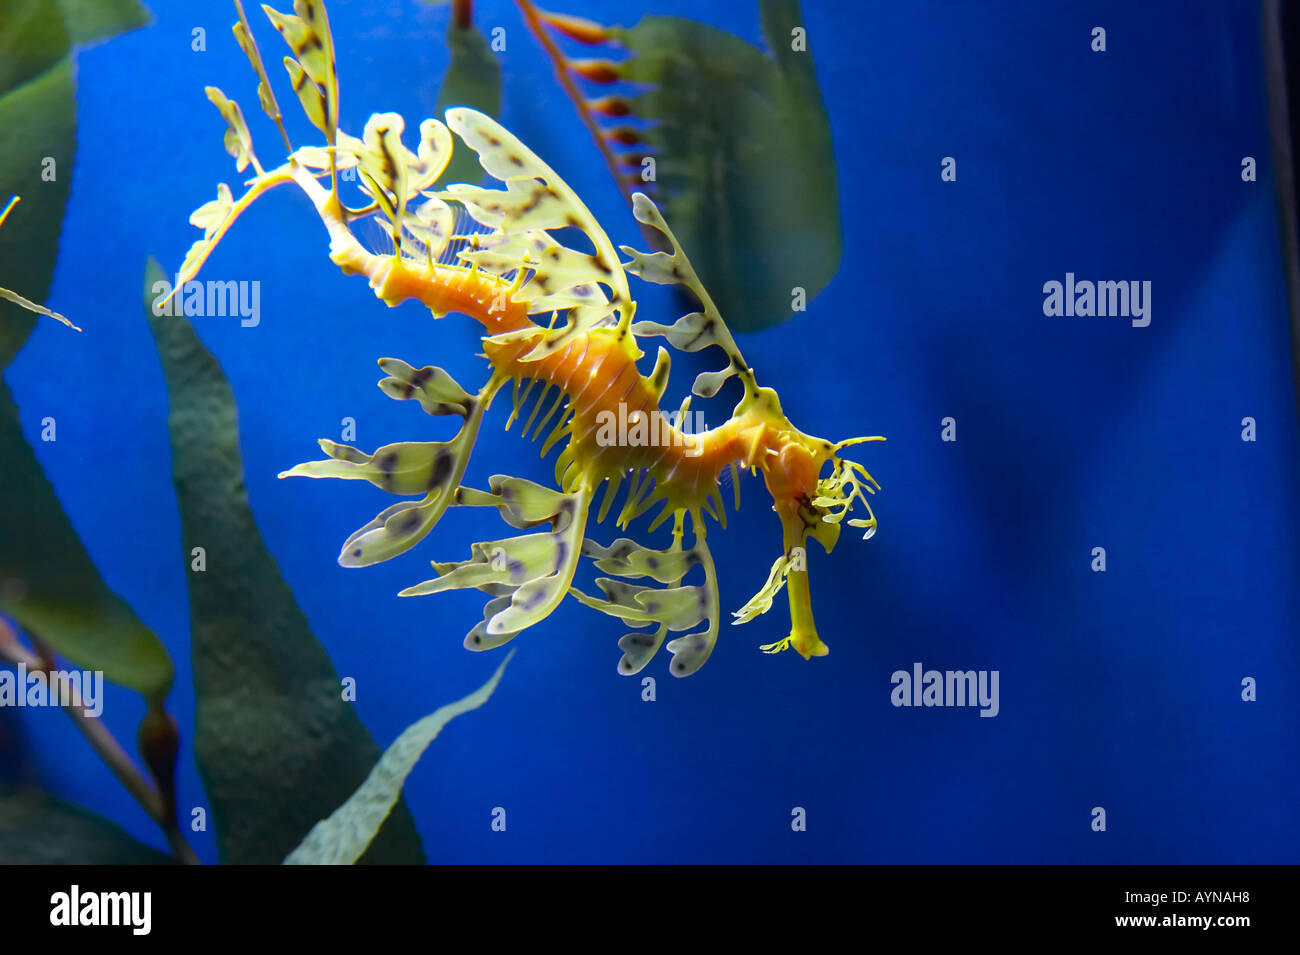 Seepferdchen Meer Pflanze Dusguise Drachenmaske lebenden Kreatur Unterwasser Fisch Tank Aquarium blau grün verstecken Tiere Meer Wasserwelt Stockfoto